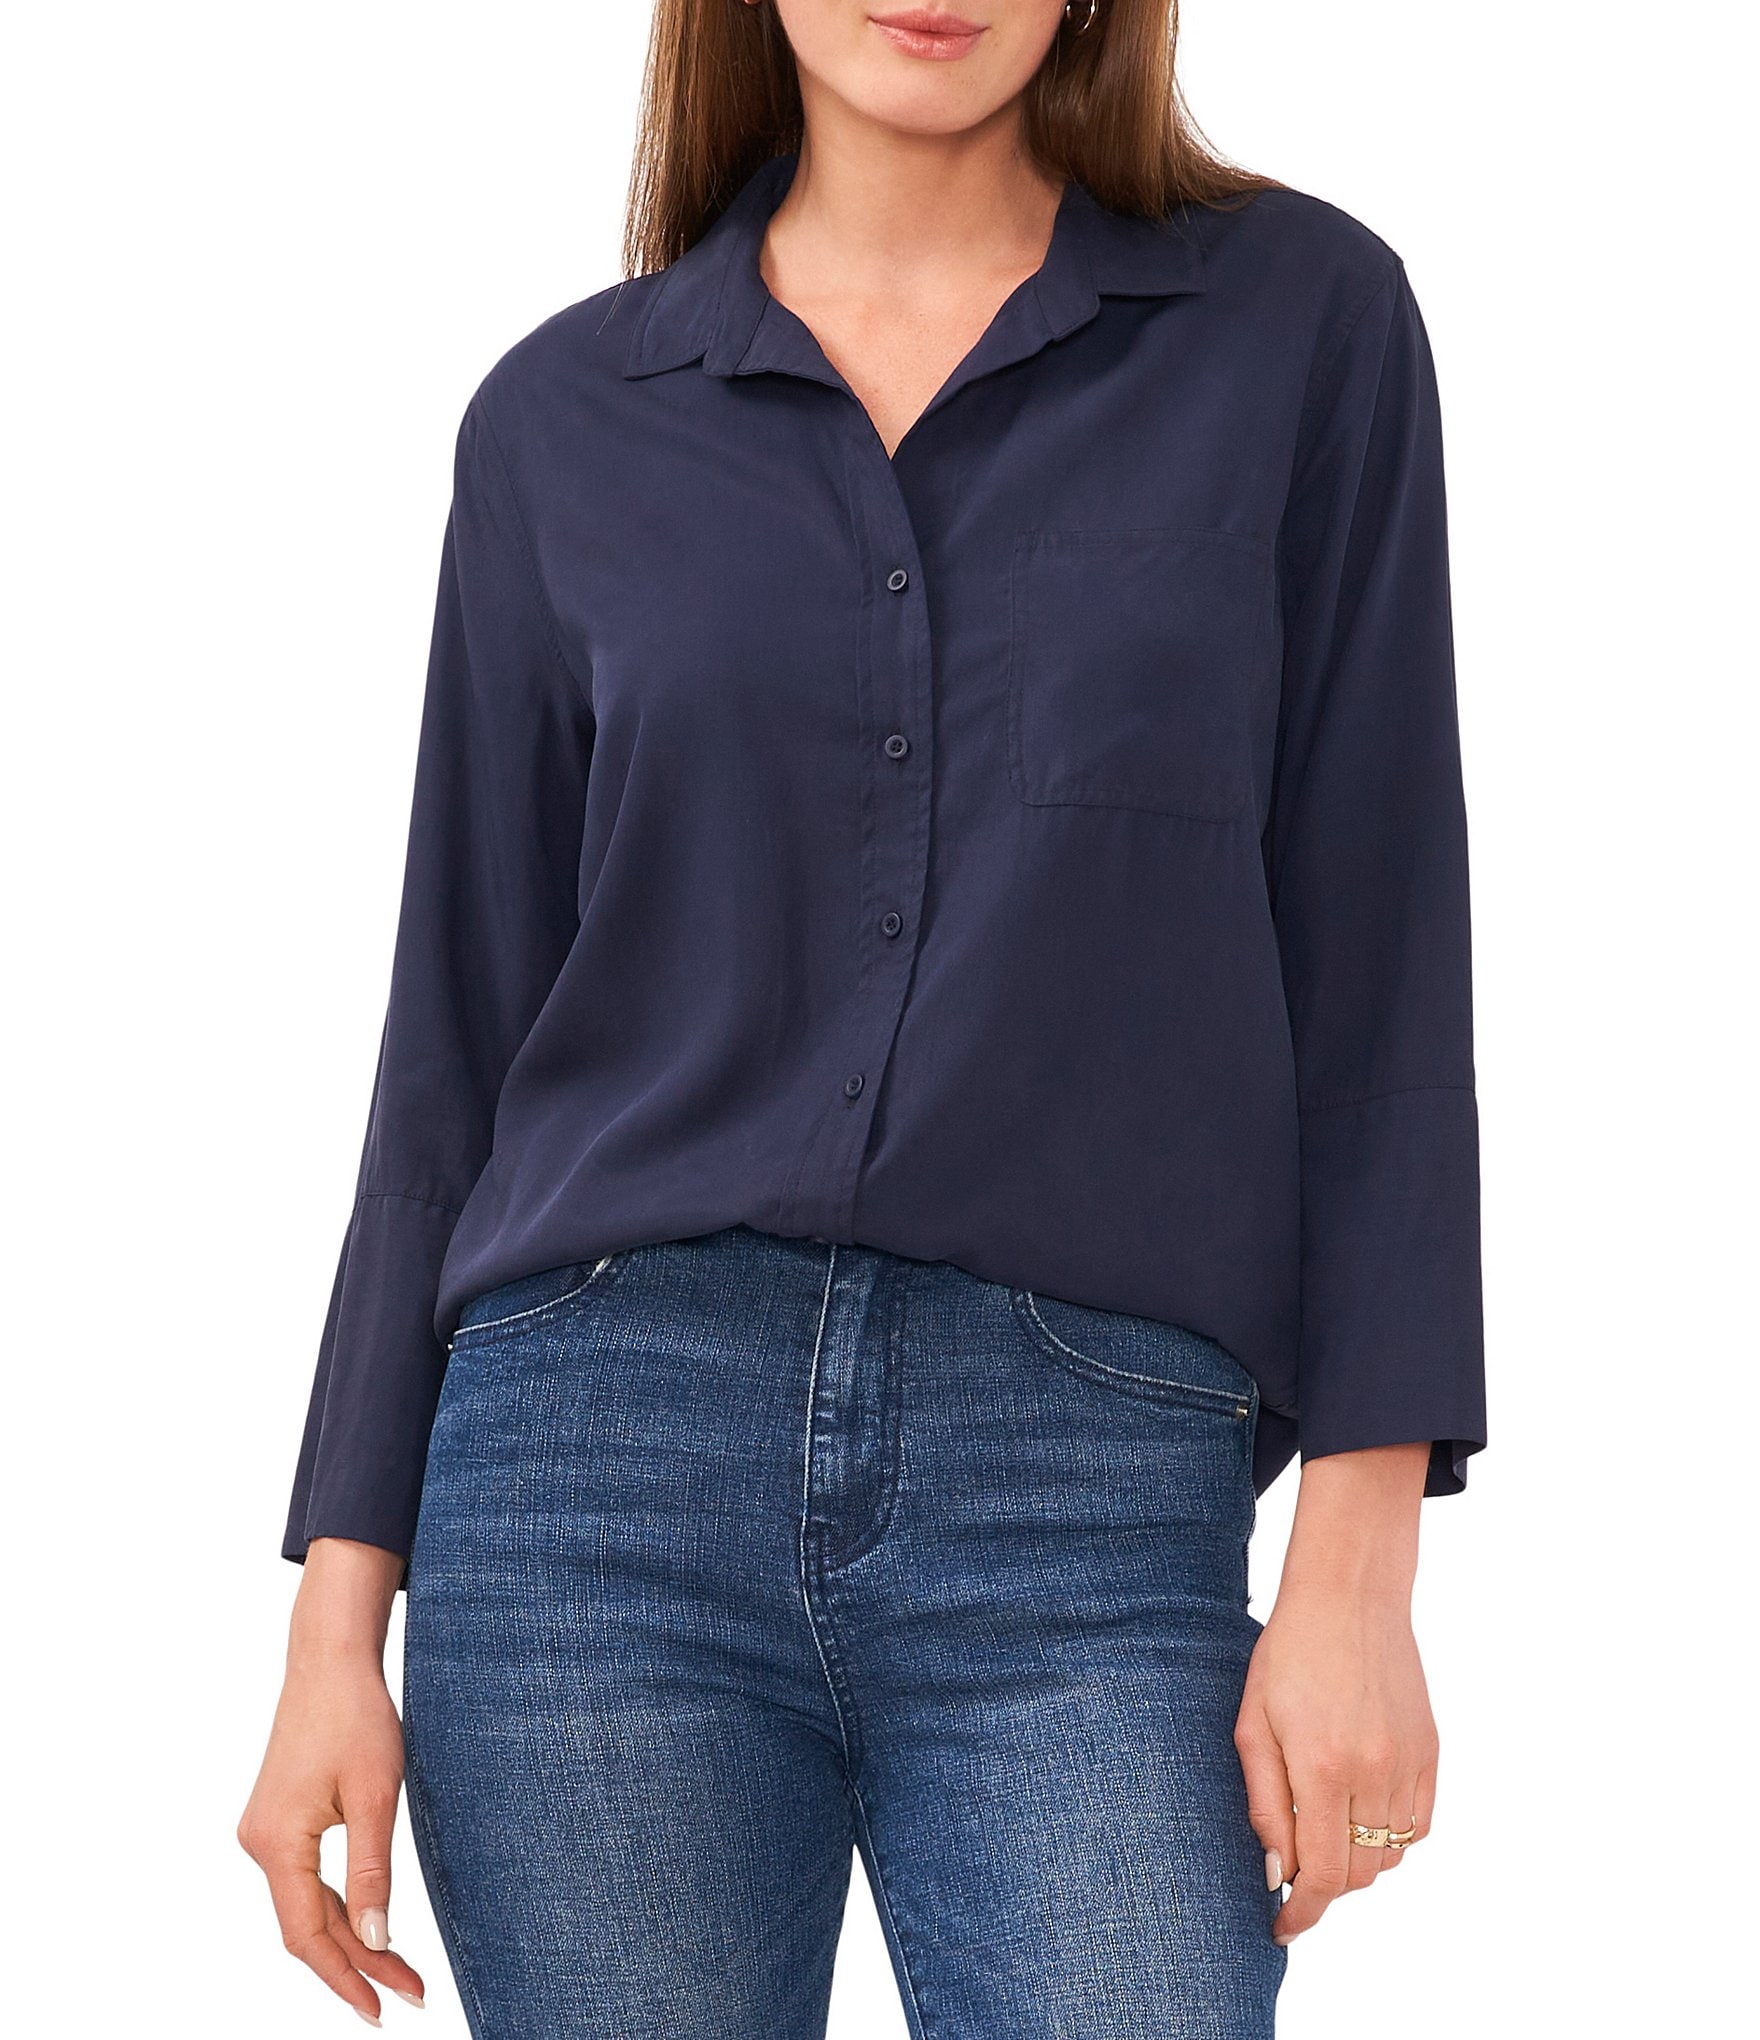 navy blue blouses: Women's Work Blouses